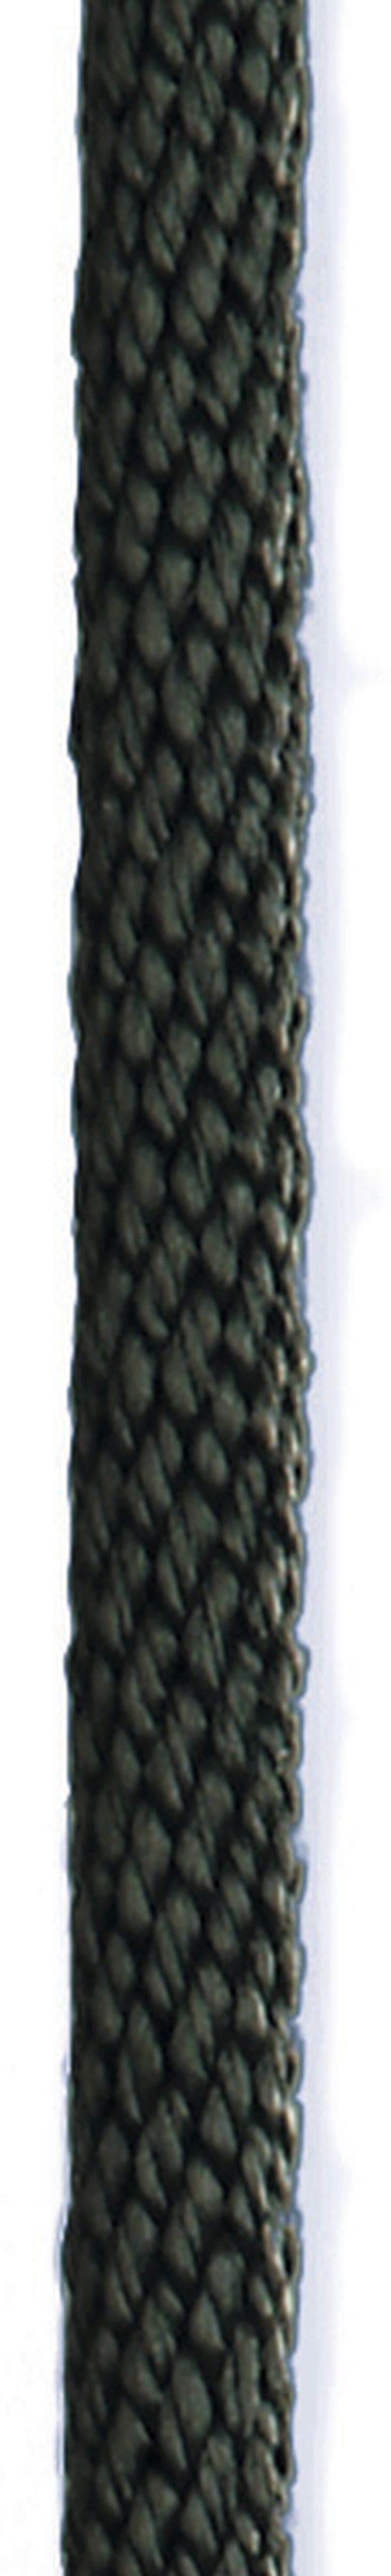 SEILFLECHTER - Spiral-Birotex - 8 mm, schwarz